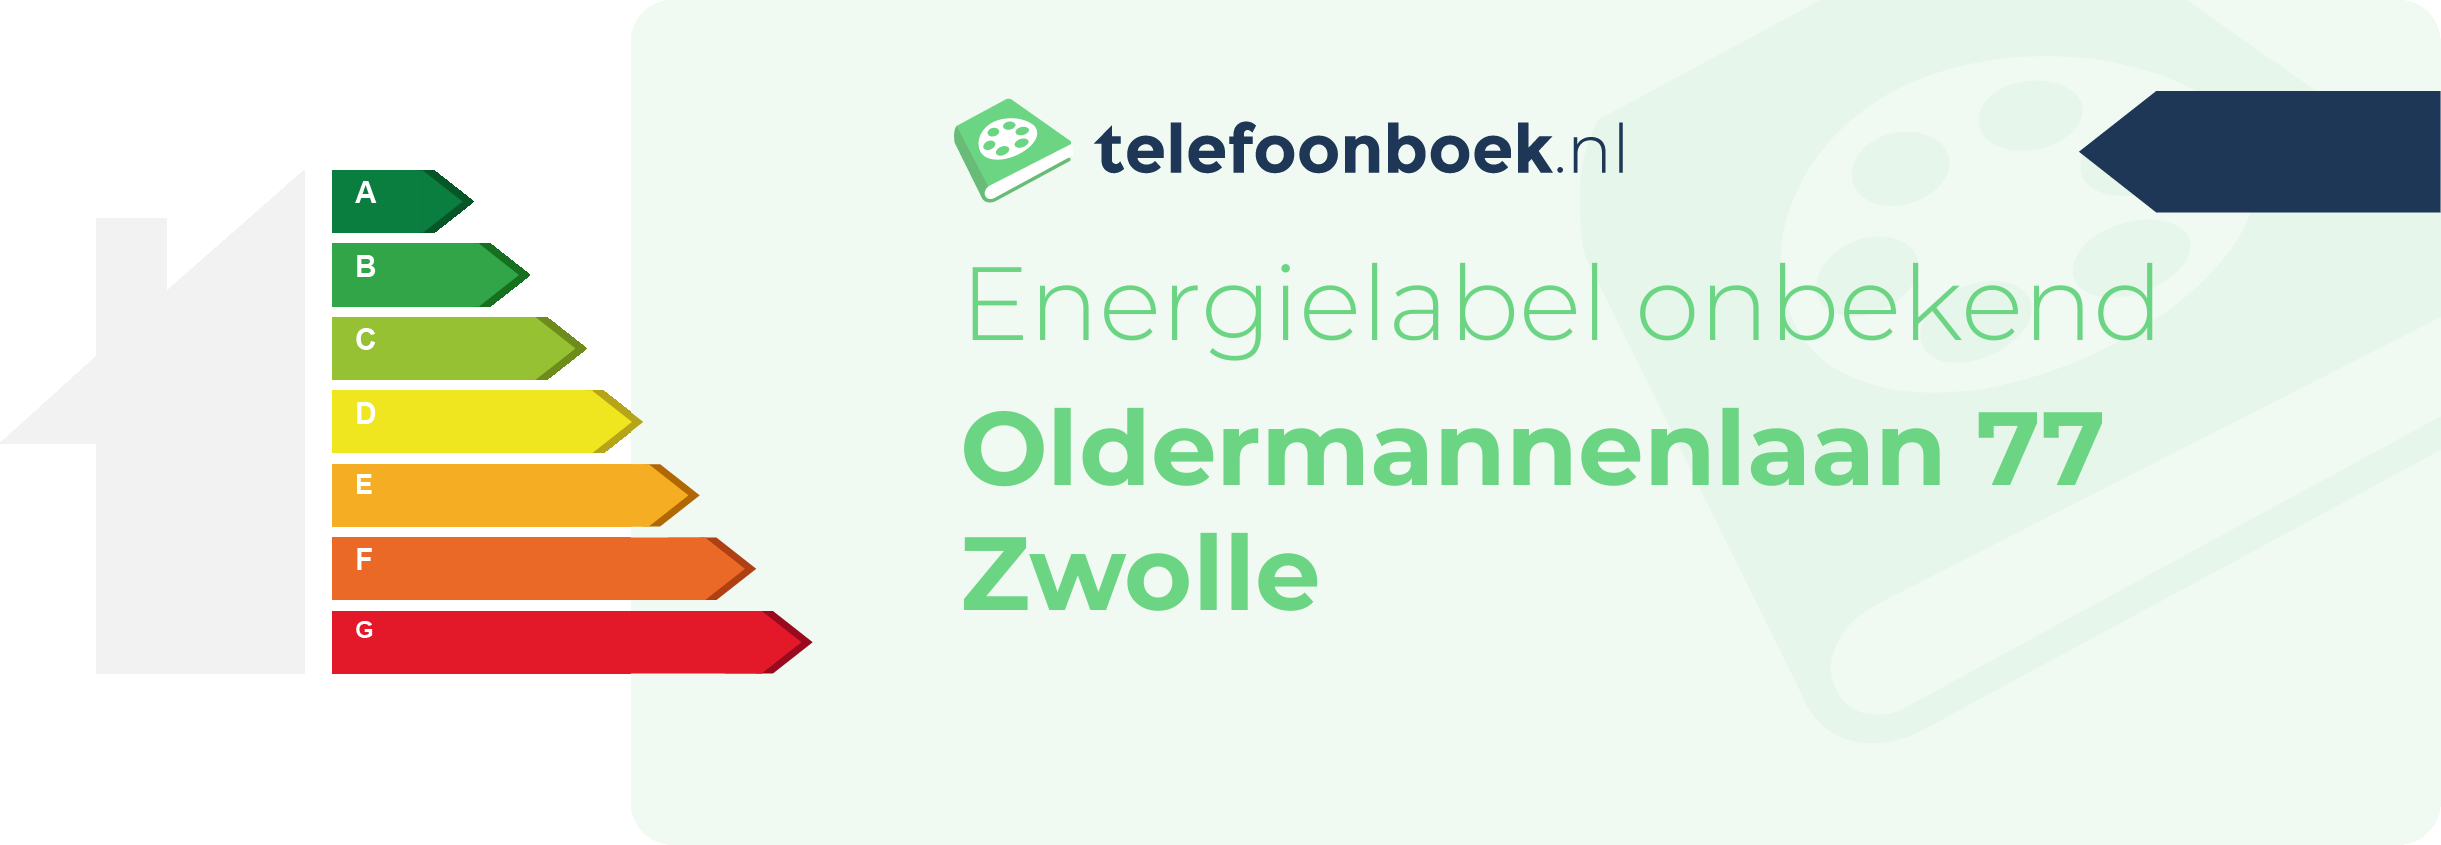 Energielabel Oldermannenlaan 77 Zwolle